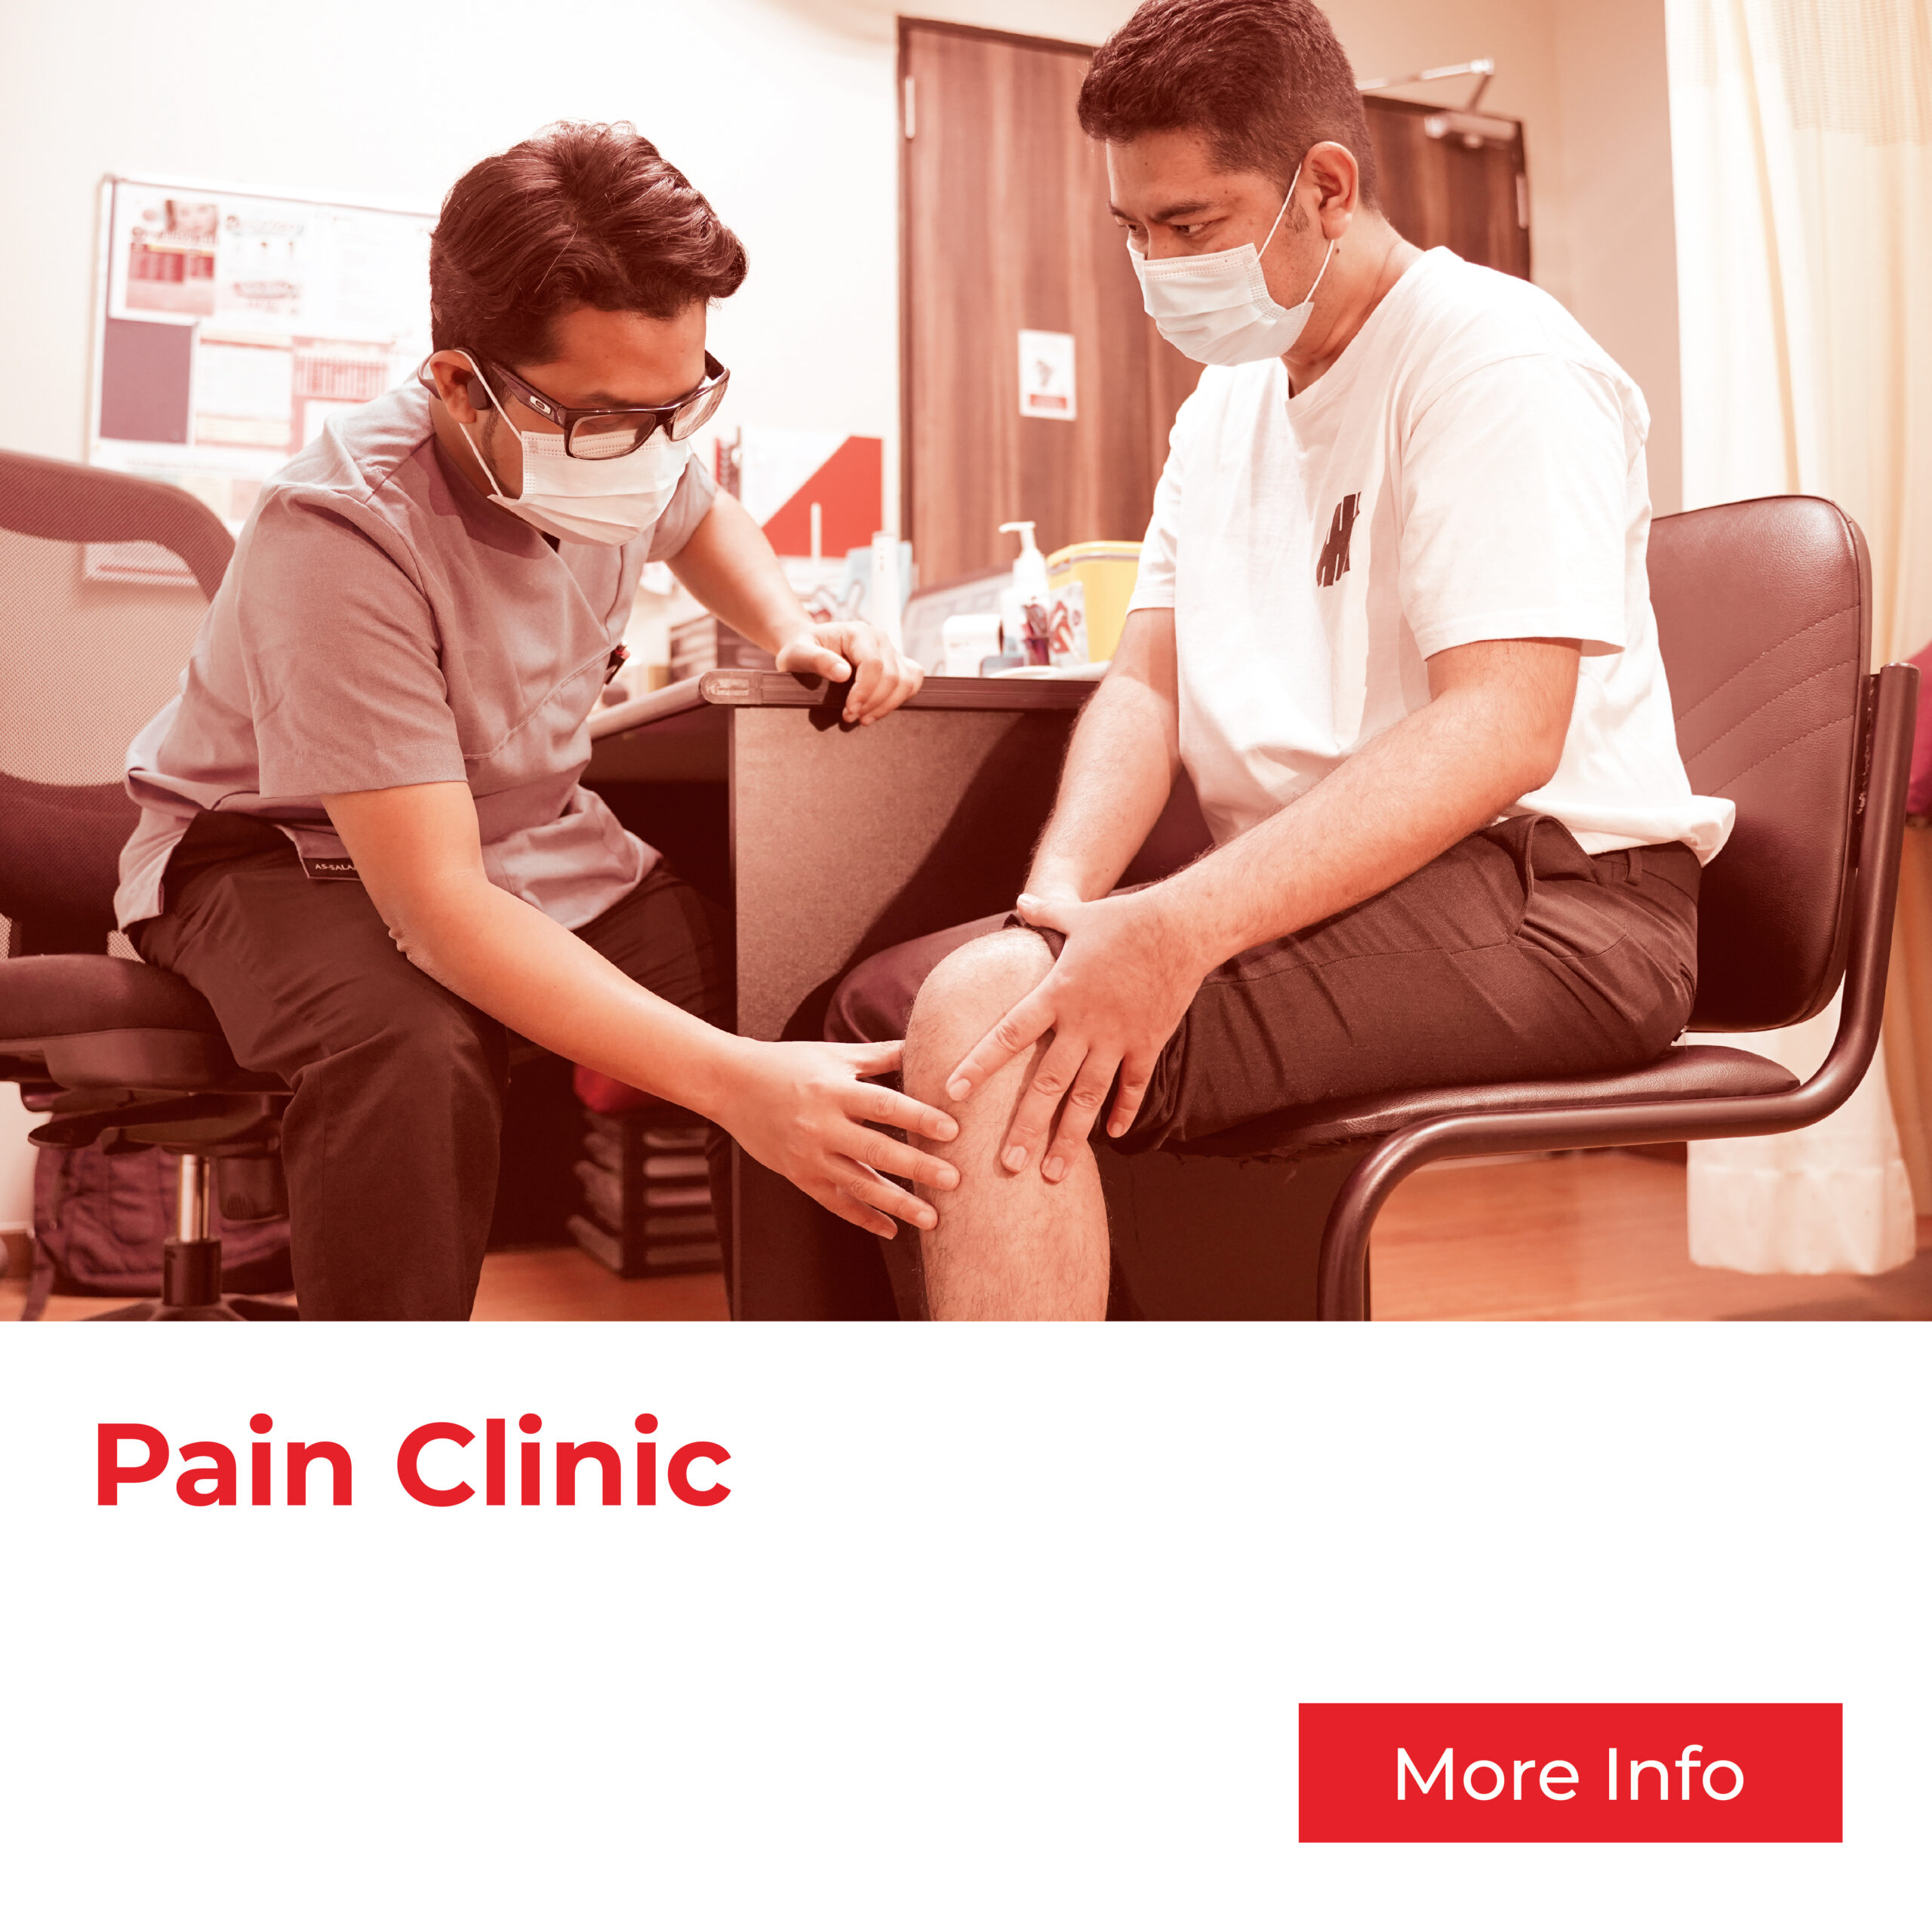 Pain Management Treatment Clinic by Klinik As Salam